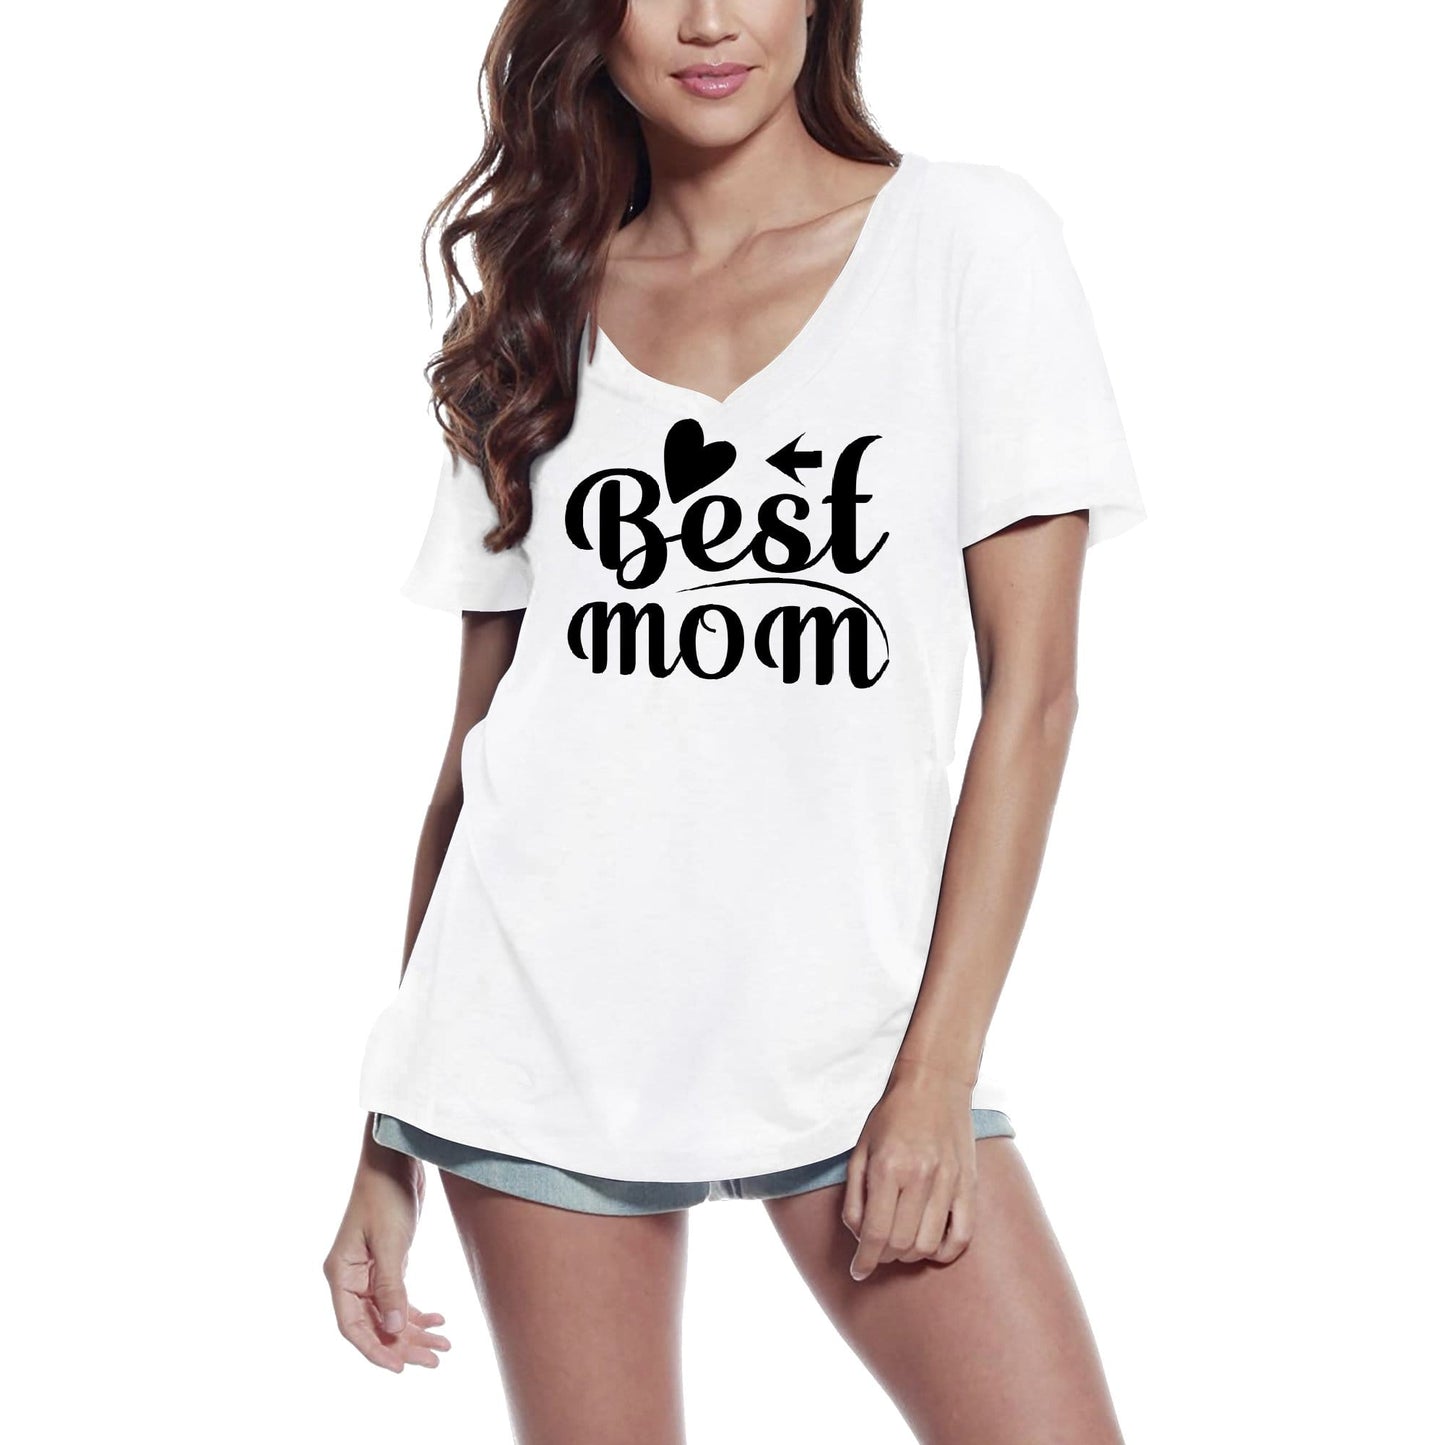 ULTRABASIC Women's T-Shirt Best Mom - Short Sleeve Tee Shirt Tops